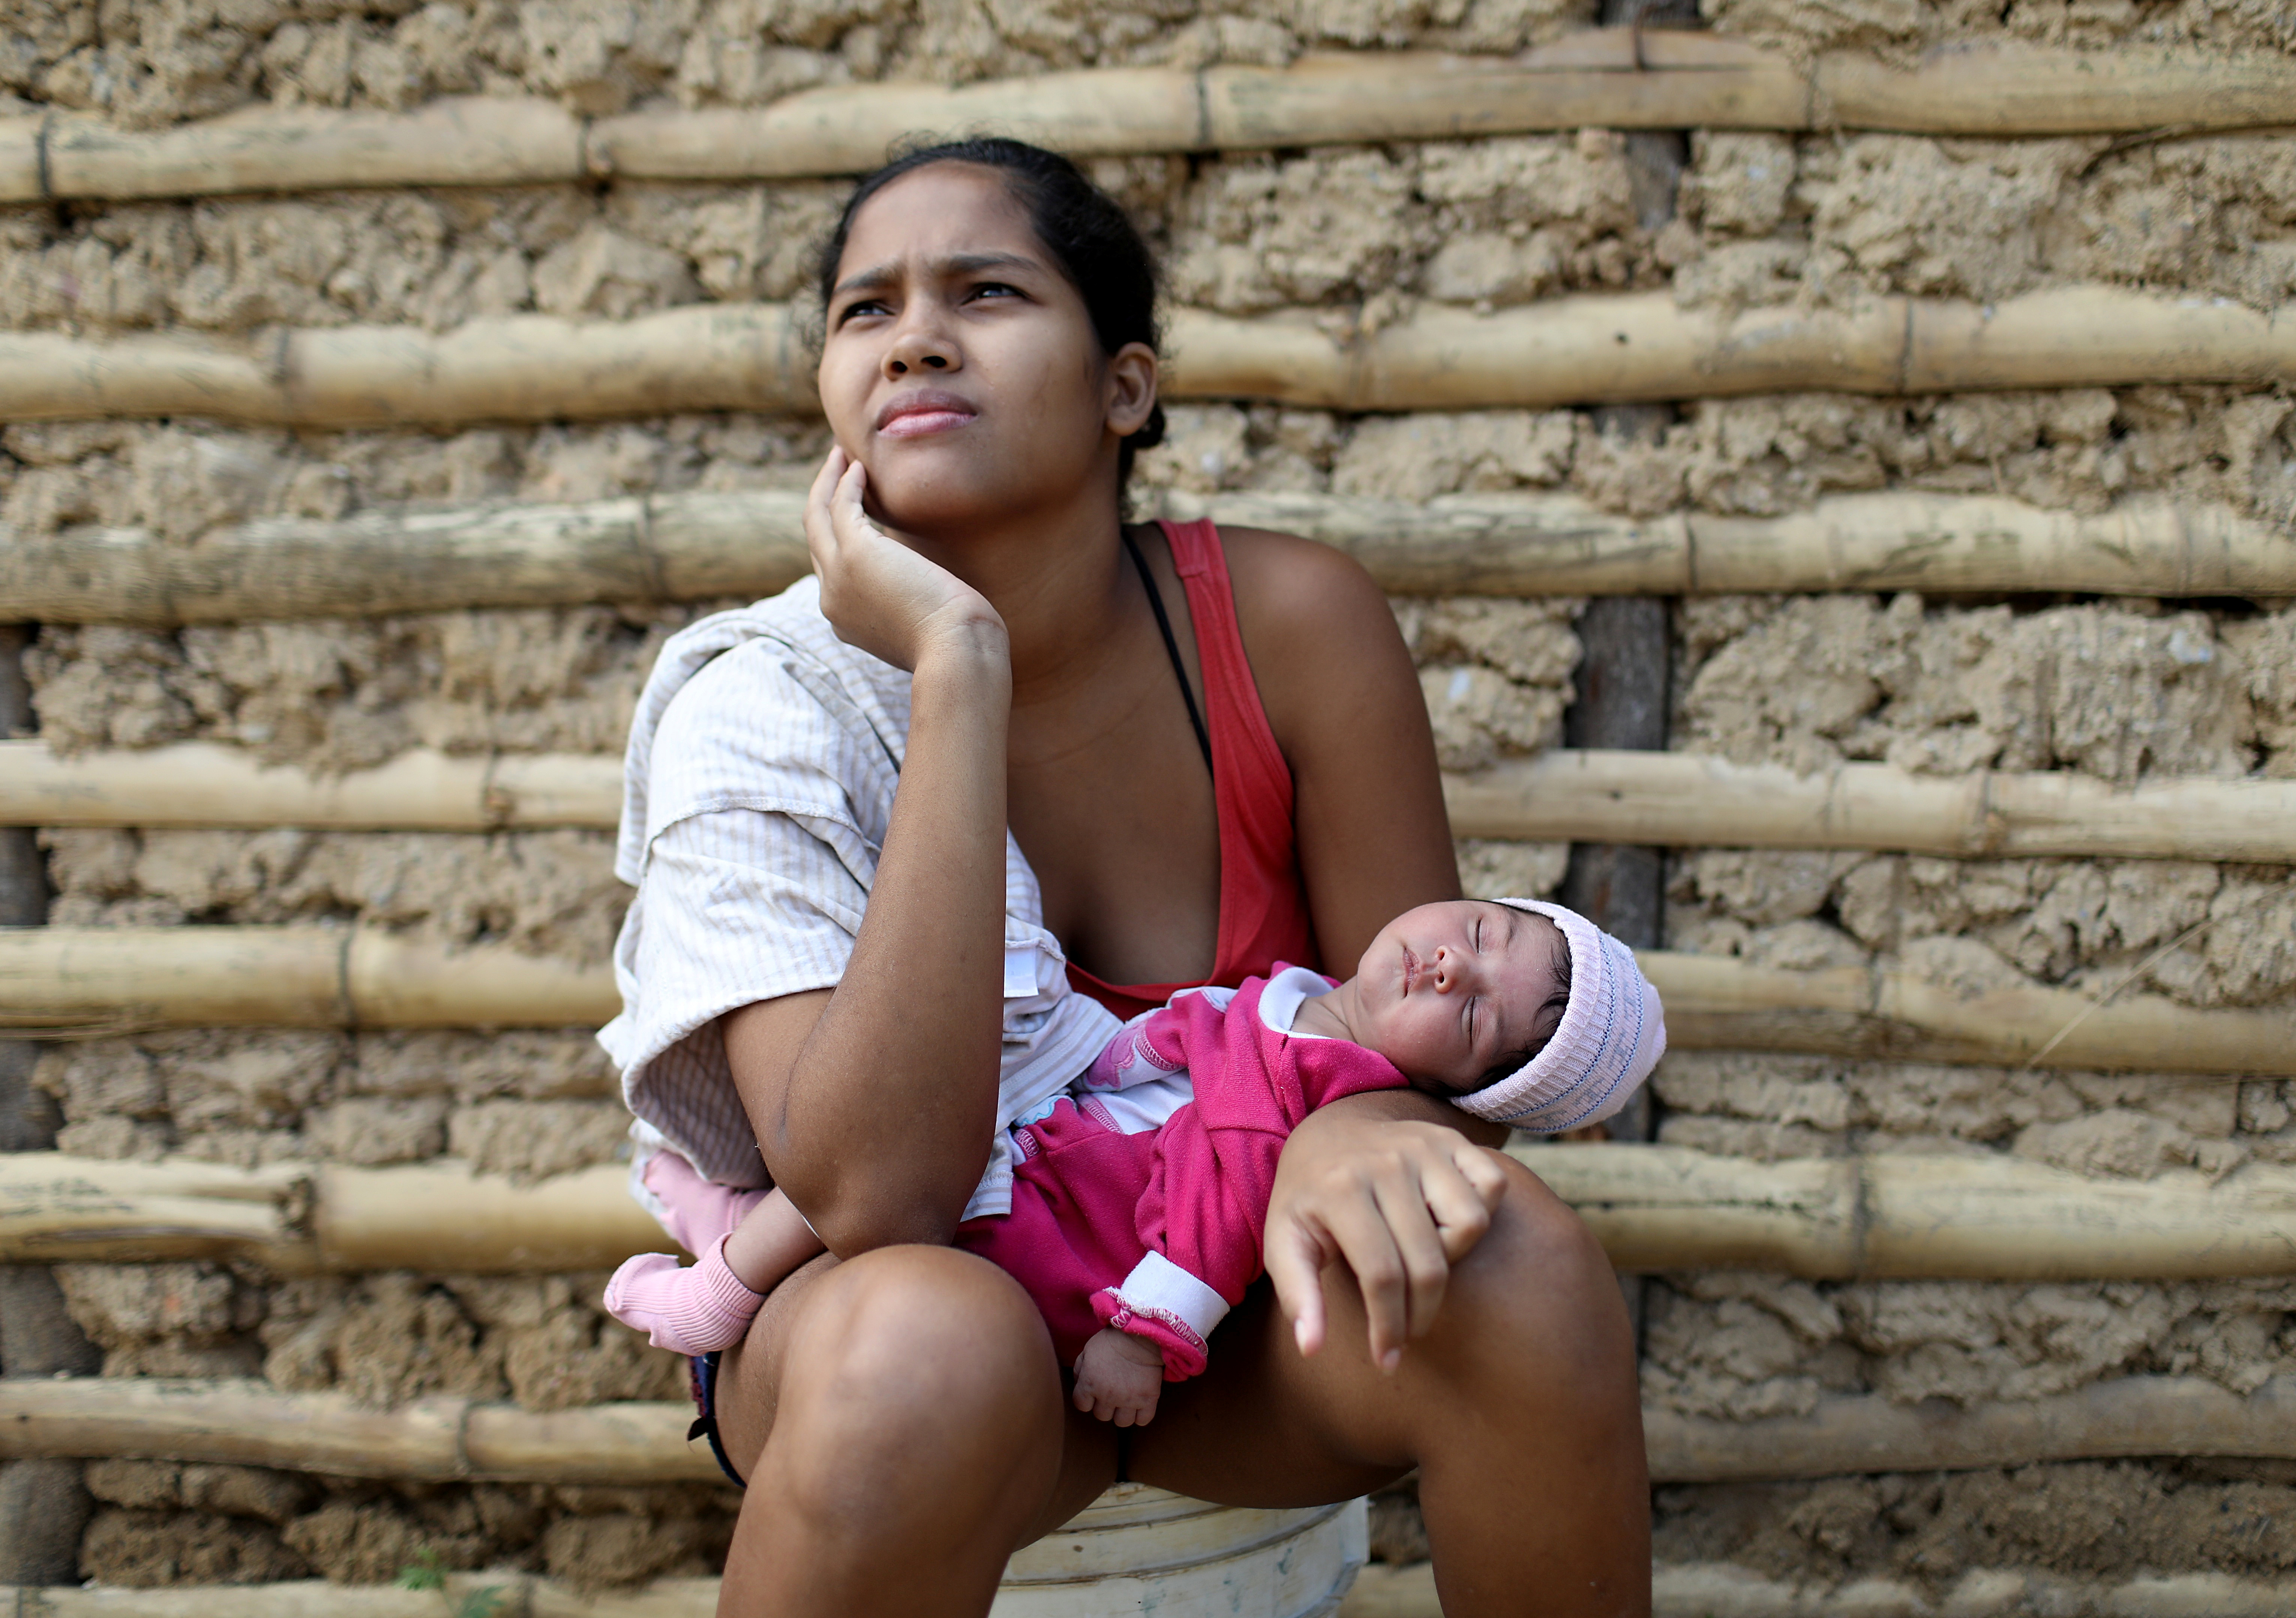 Casas de bahareque o barro muestran el deterioro de las condiciones de vida  en Venezuela (Fotos)